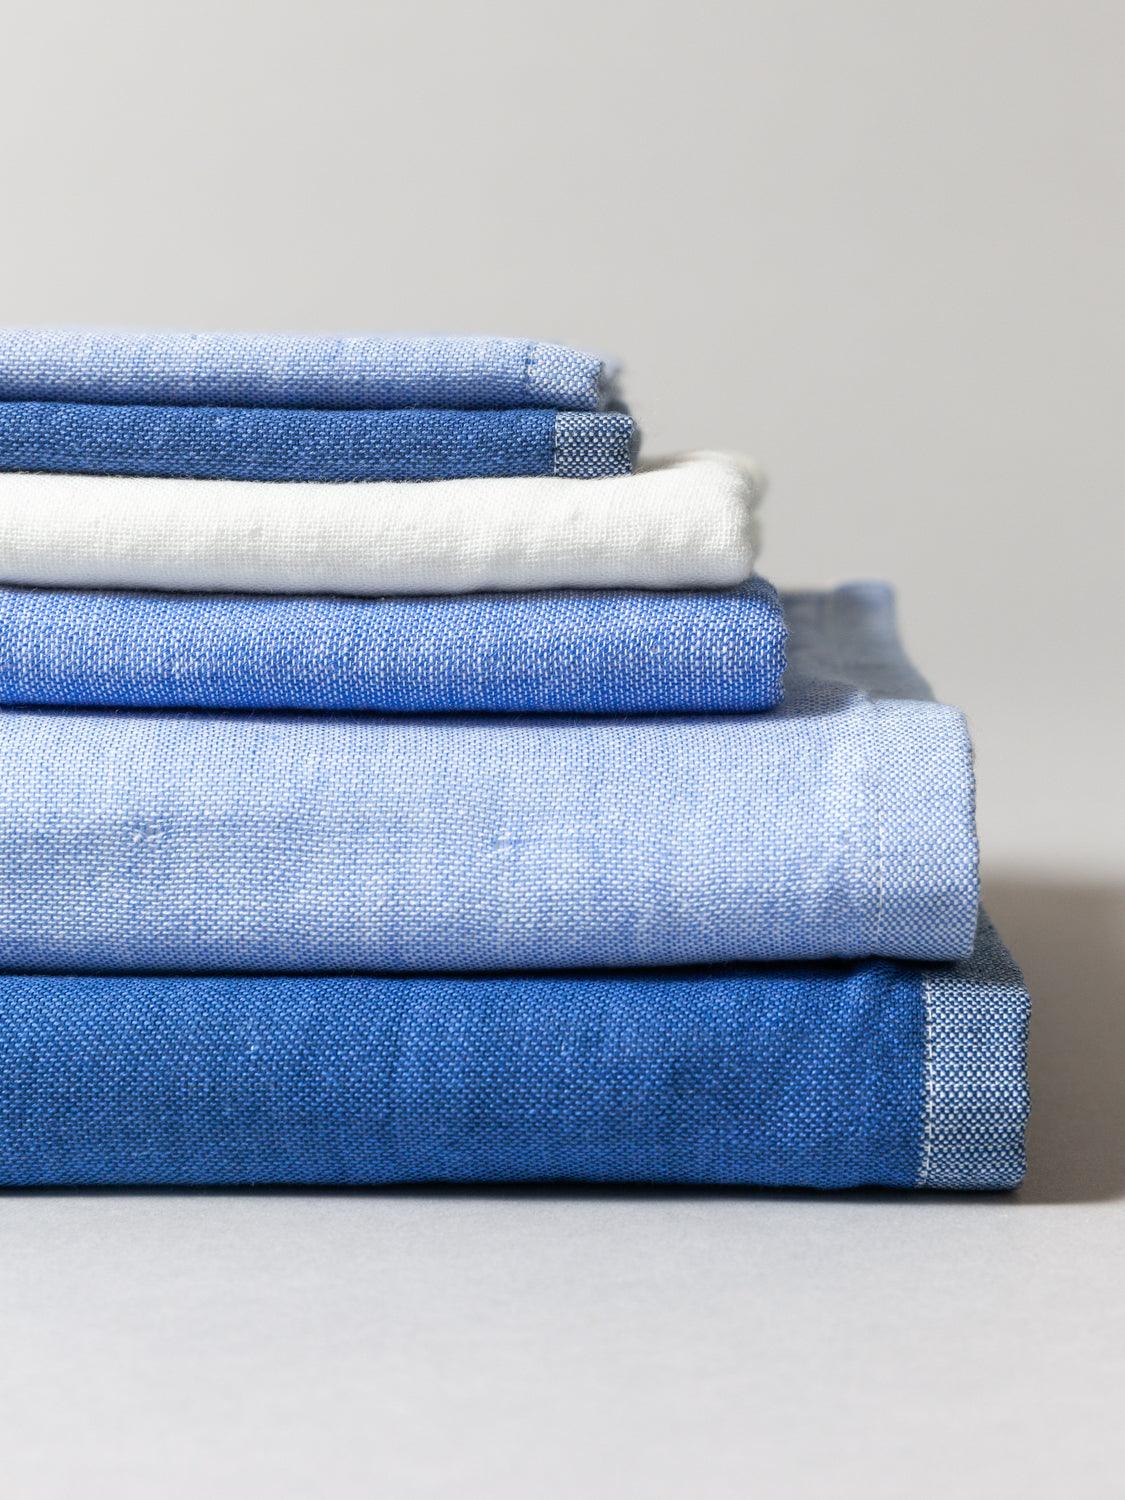 Two-Tone Chambray Towel, Blue 1 | MORIHATA